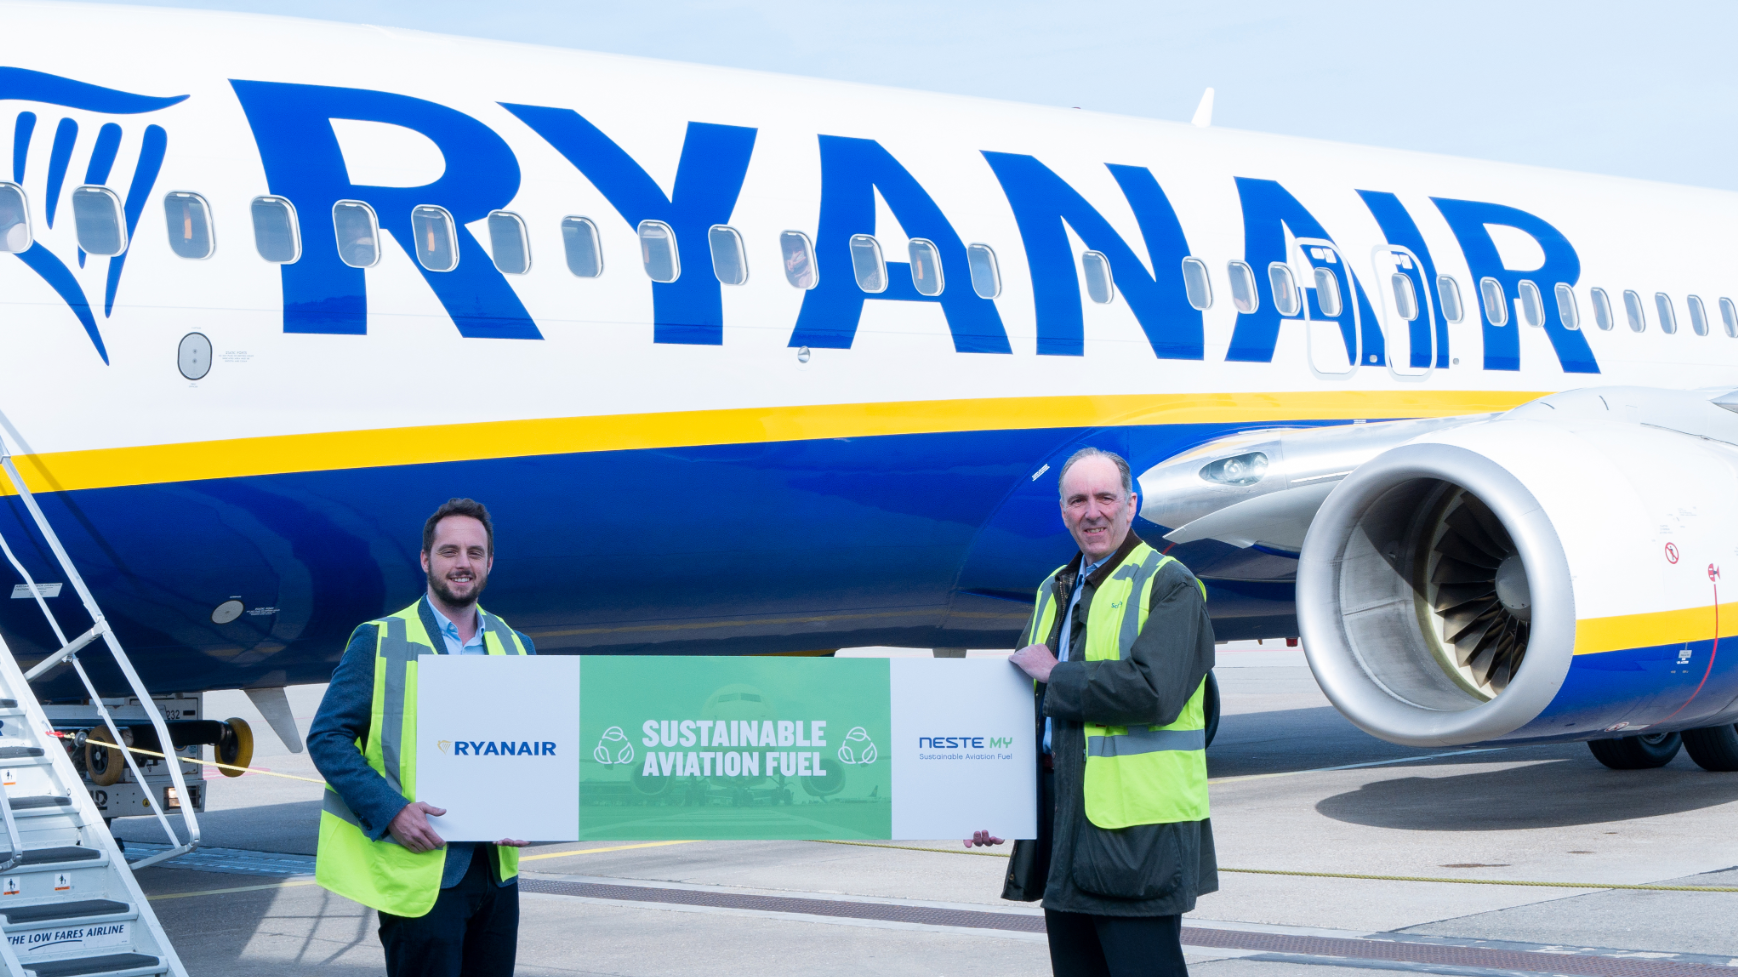 Ryanair assina parceria com Neste Holland para apoiar voos com 40% de combustível de aviação sustentável